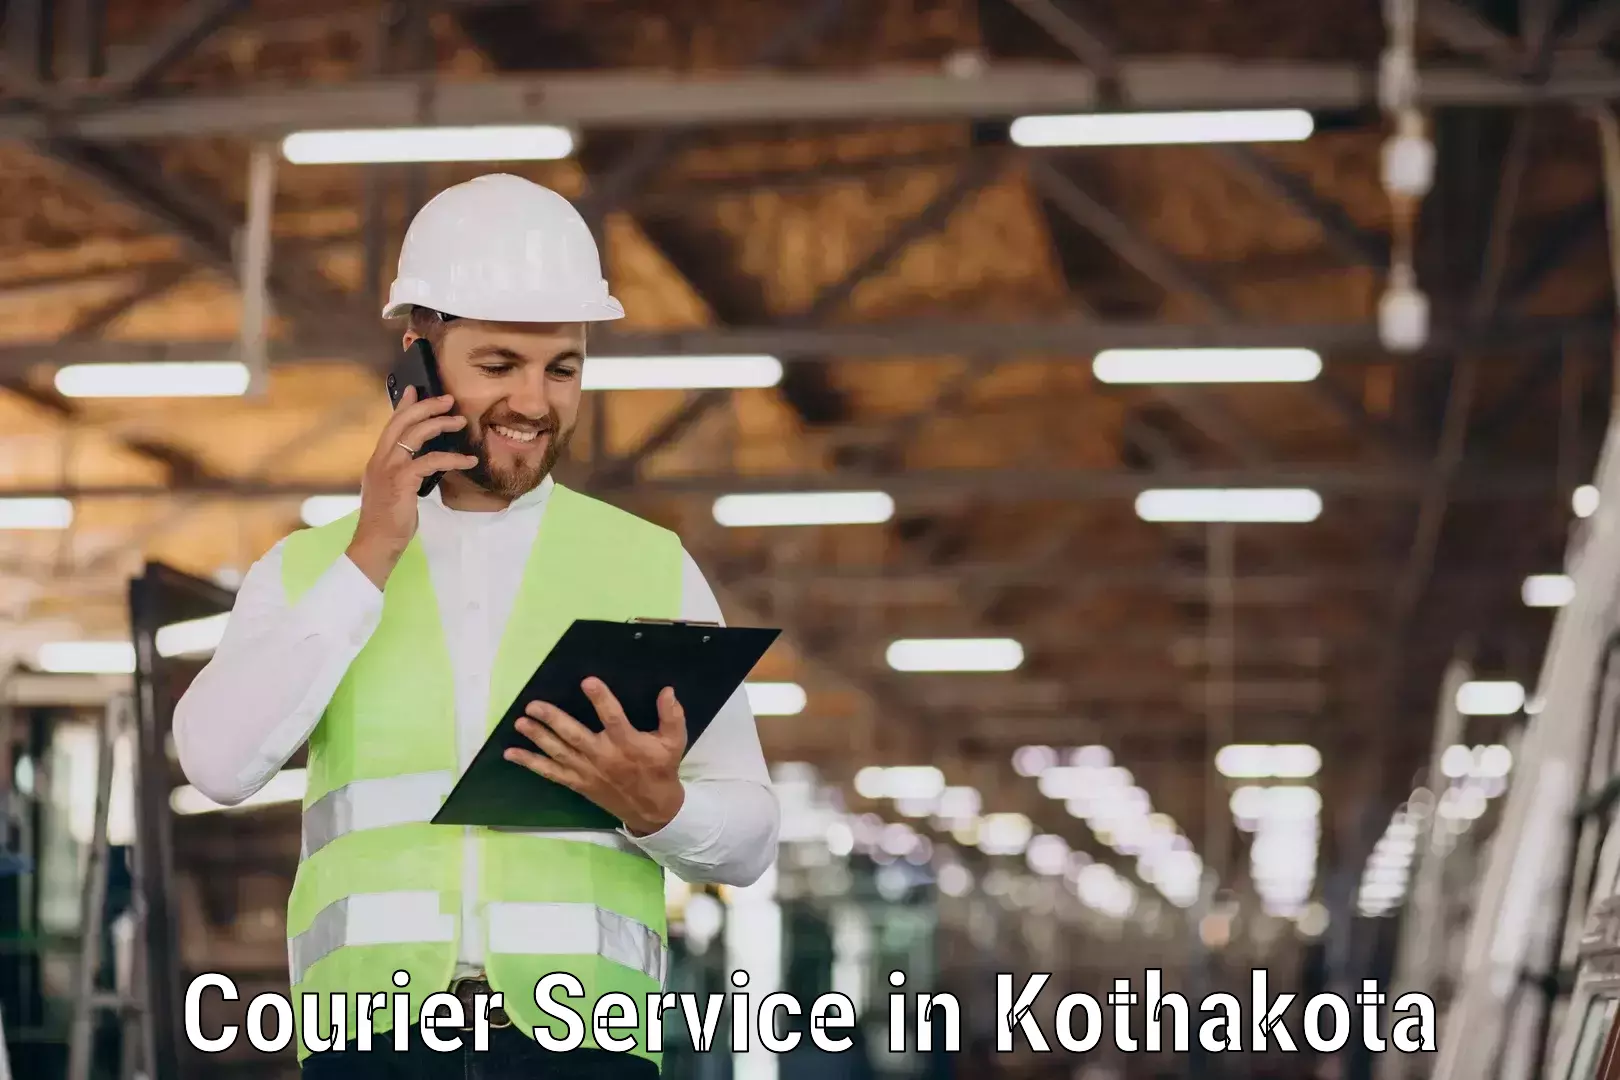 Optimized shipping routes in Kothakota